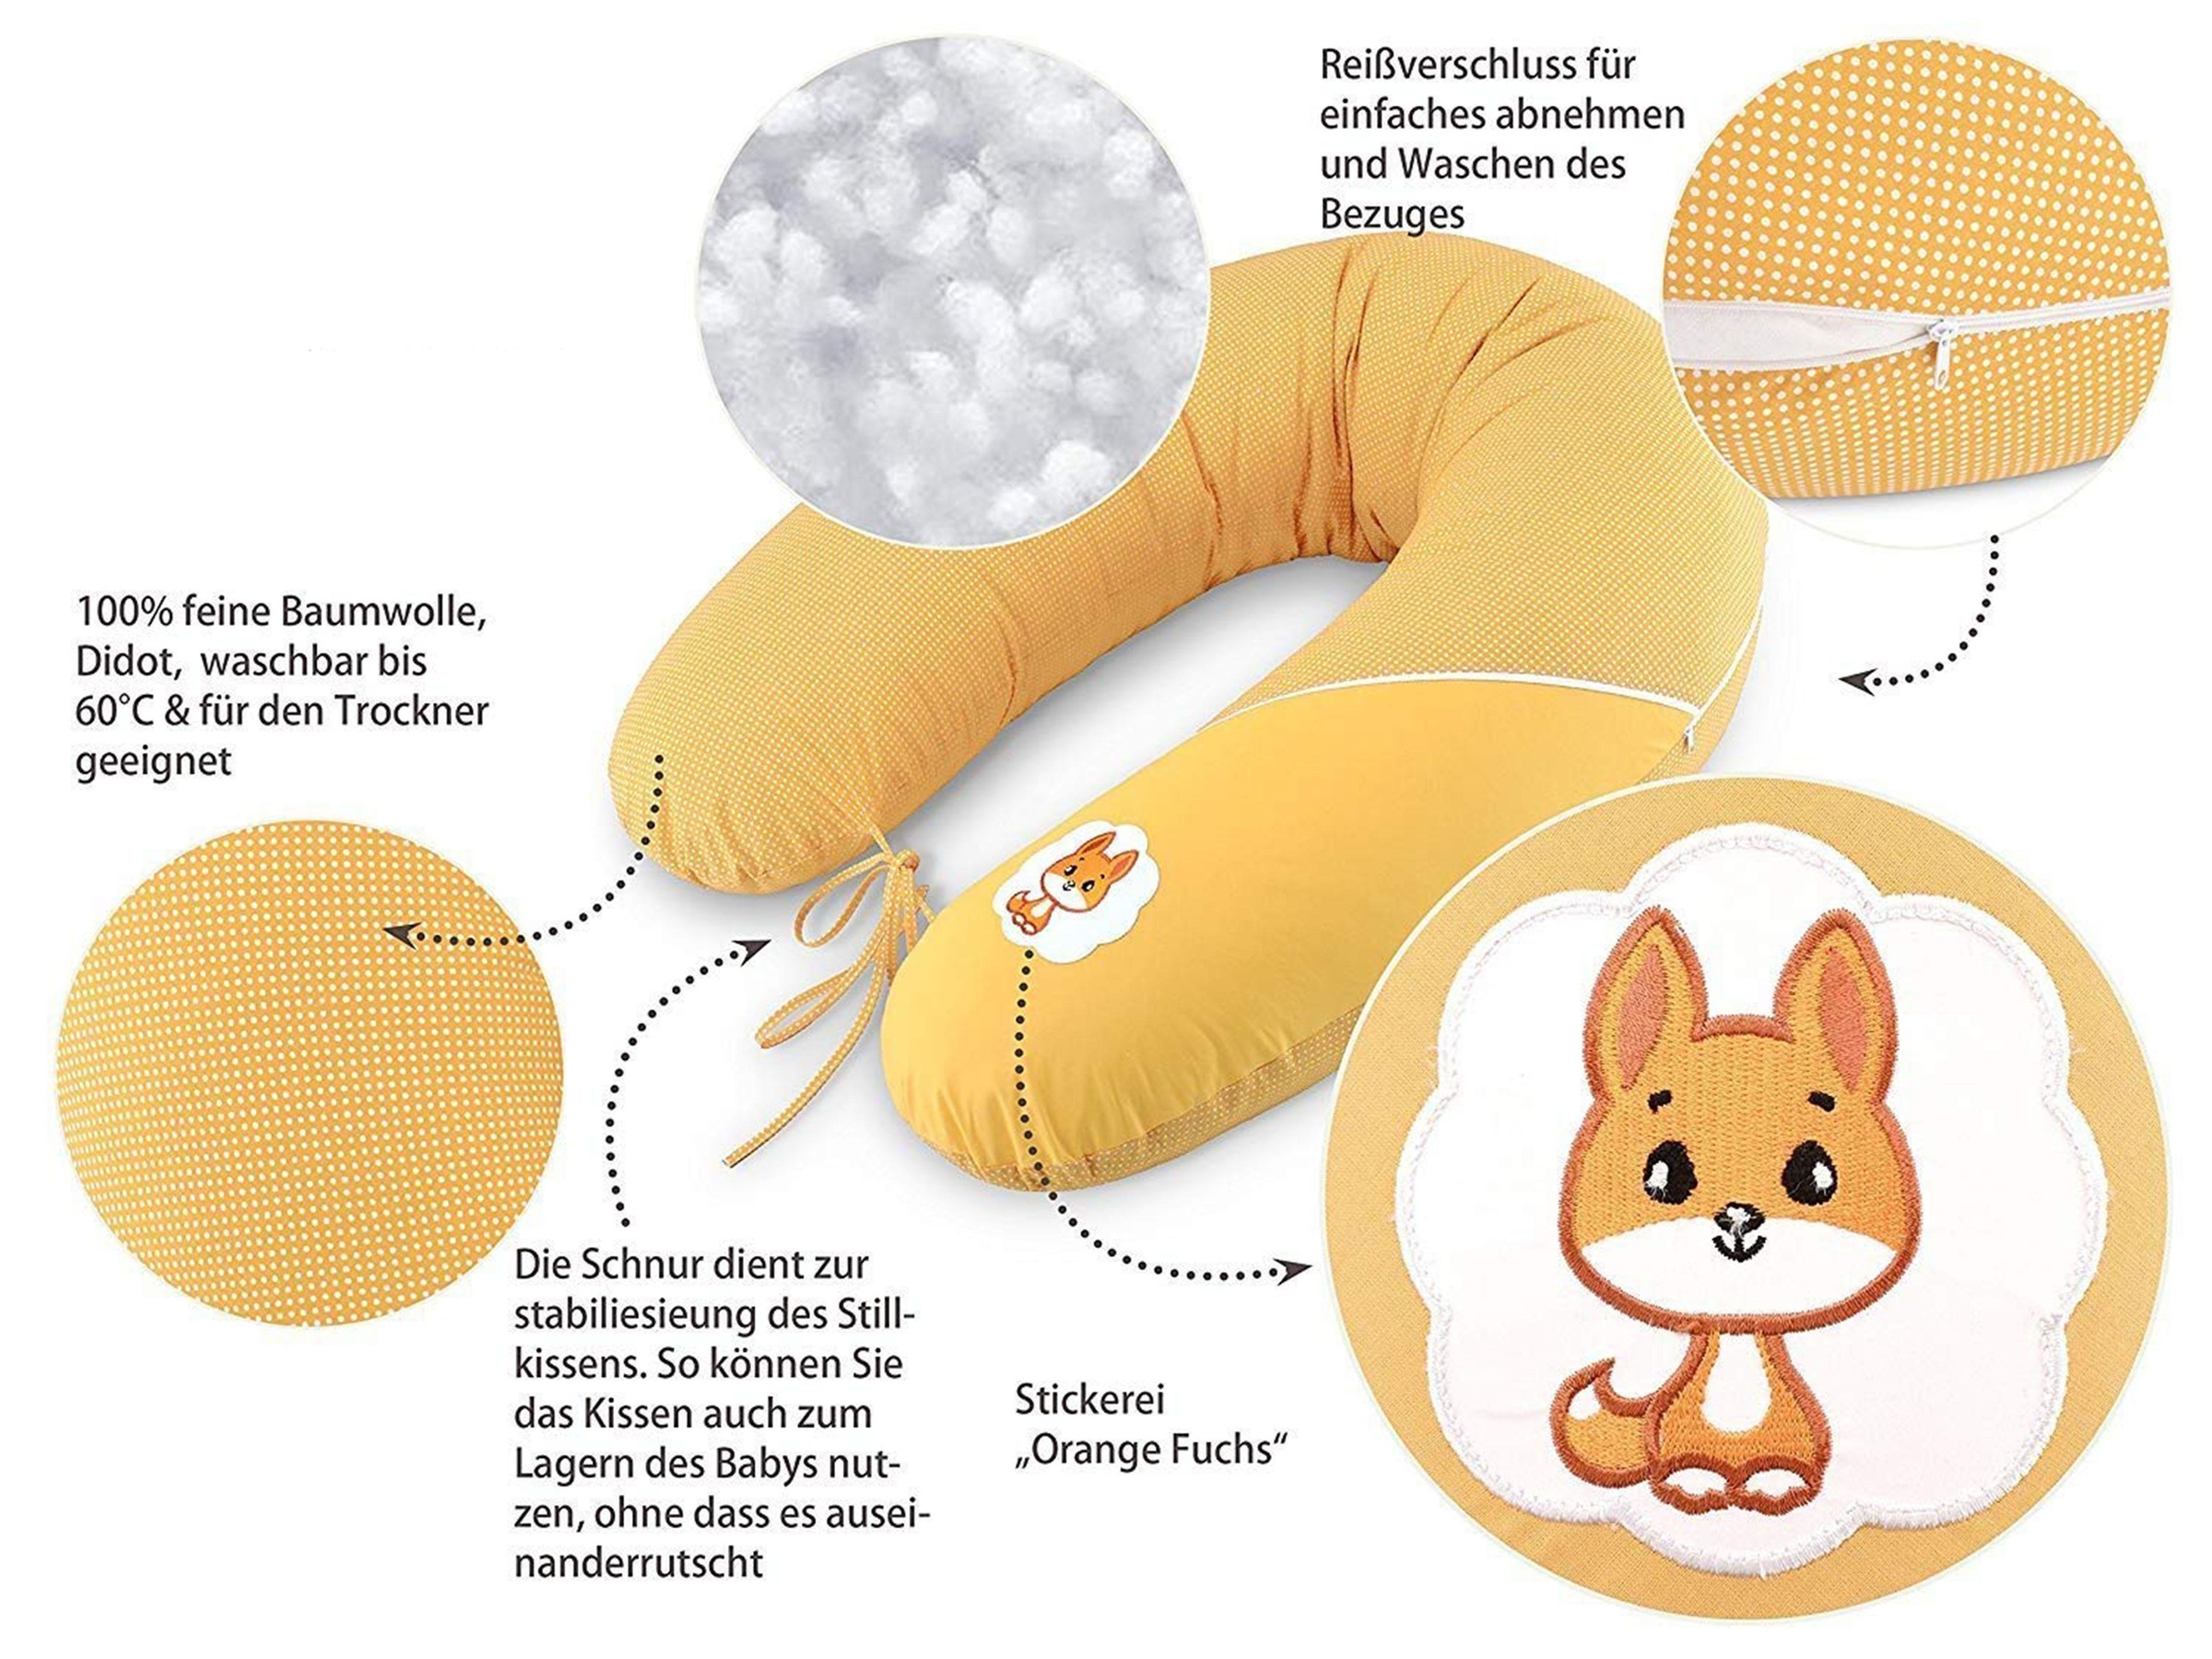 SEI Design Stillkissen »Fuchs orange«, mit hochwertiger Stickerei mit niedlichen Tiermotiven